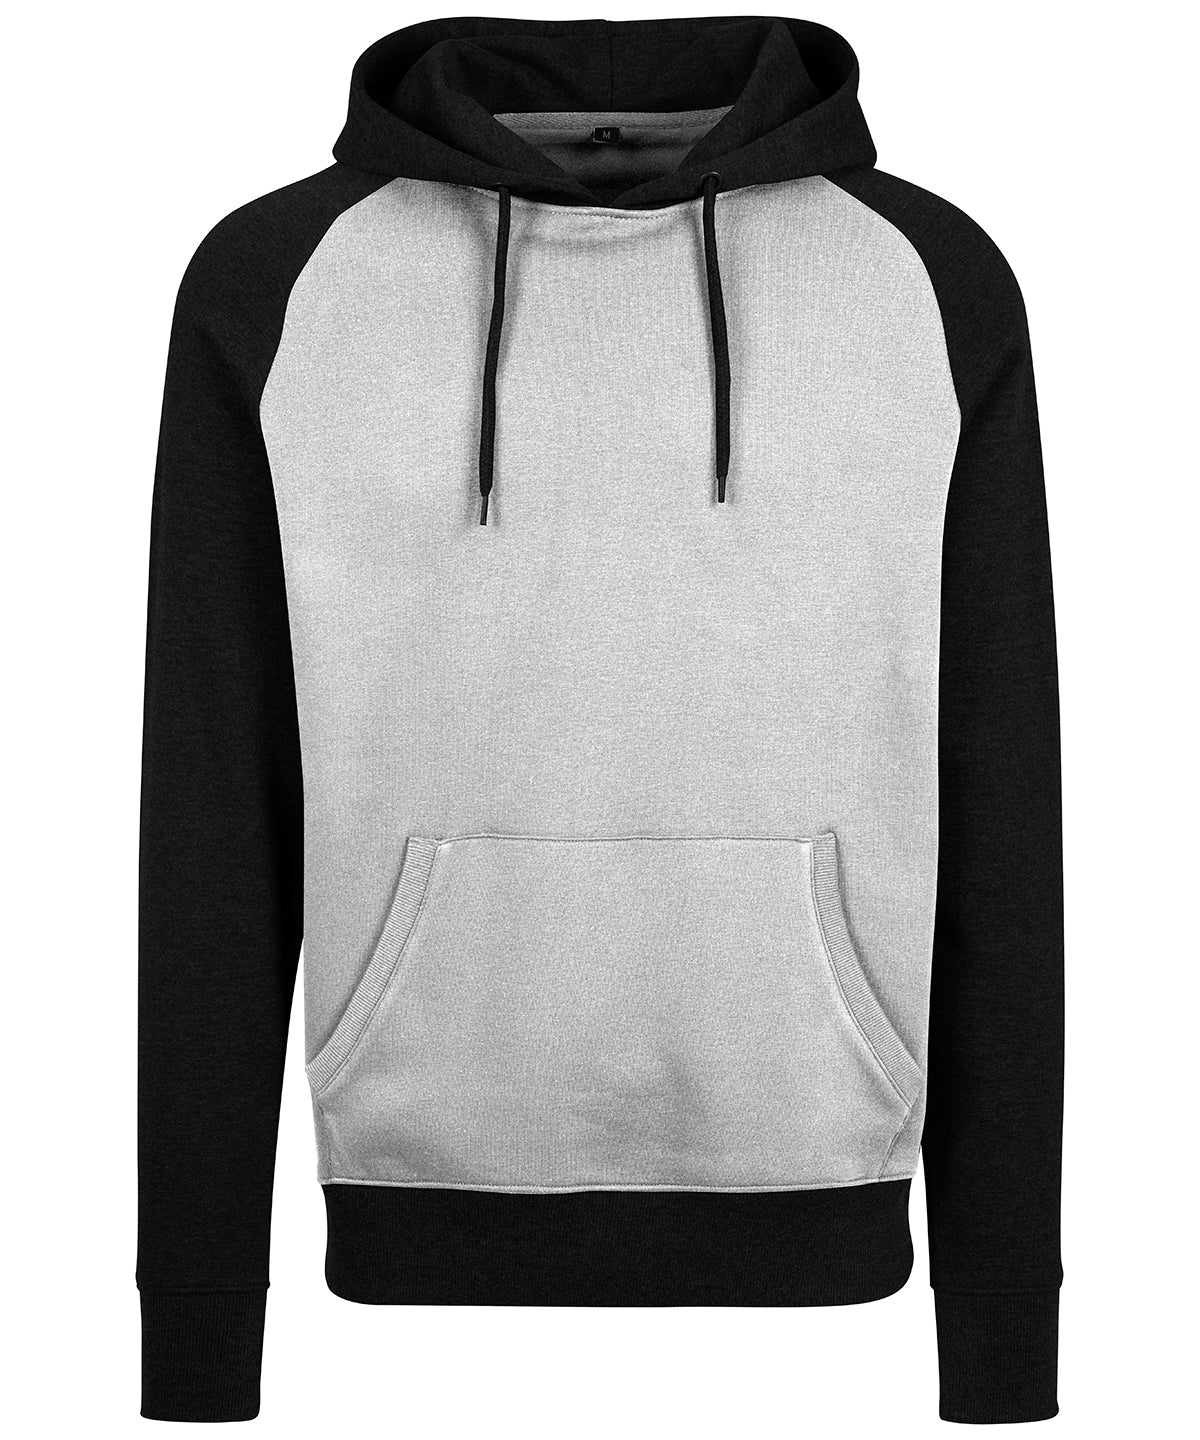 Personalised Hoodies - Dark Grey Build Your Brand Raglan hoodie